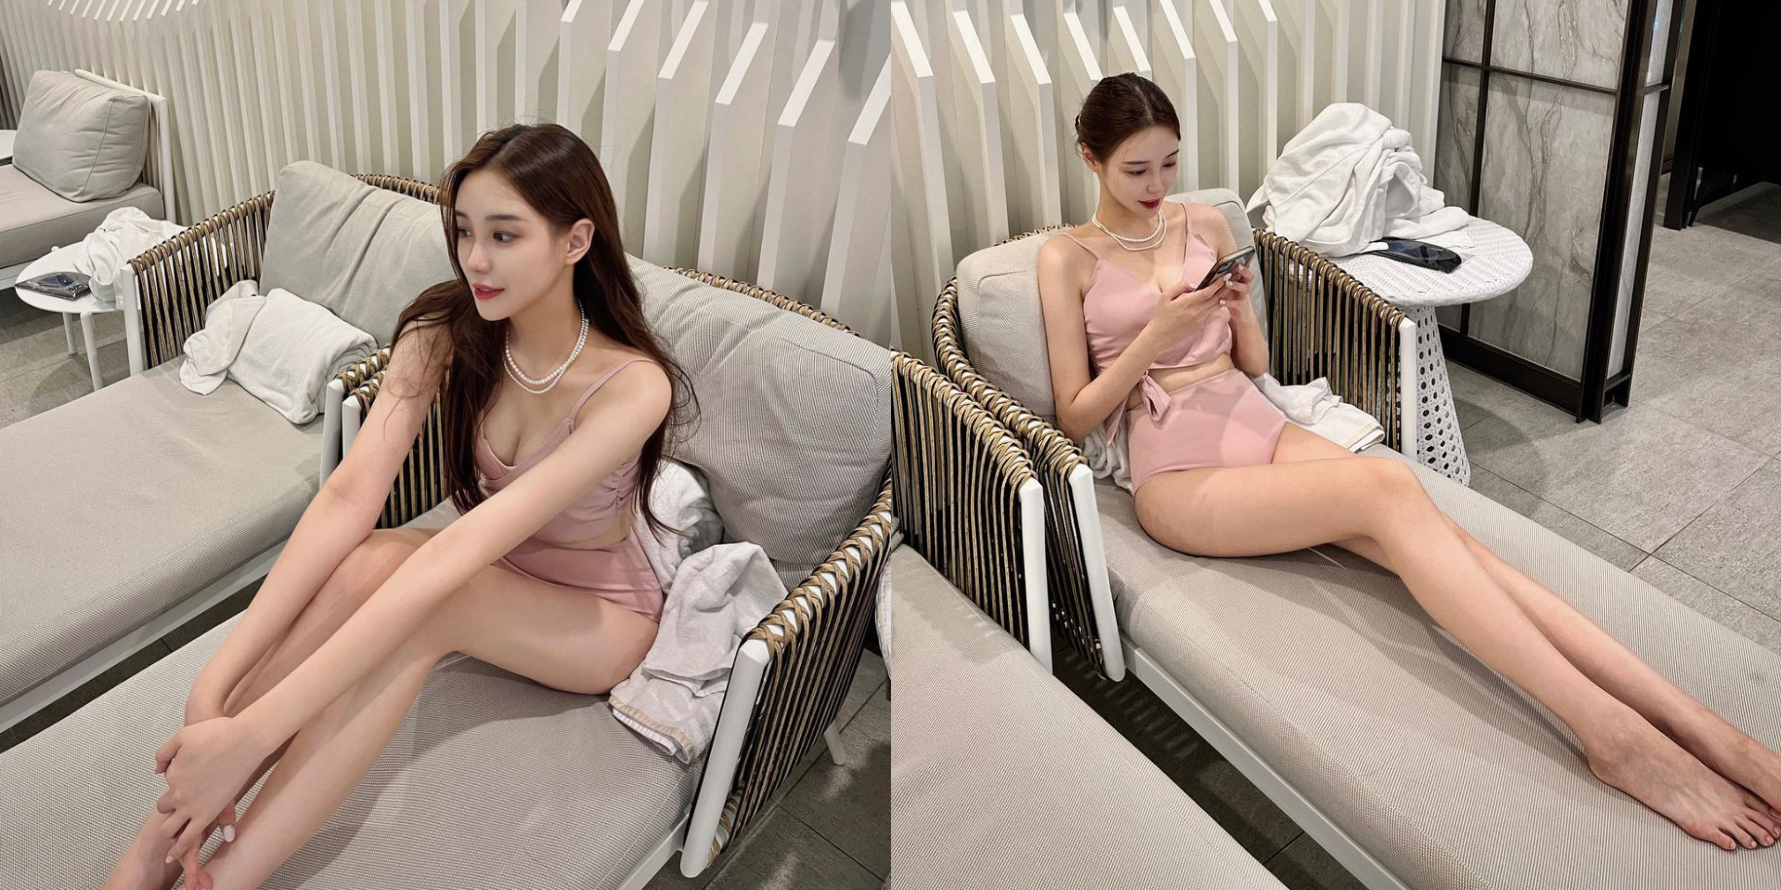 Tân Hoa hậu Hàn Quốc gây sốt: Mỹ nhân 23 tuổi đẹp tựa diễn viên, sở hữu đôi chân siêu dài - Ảnh 6.